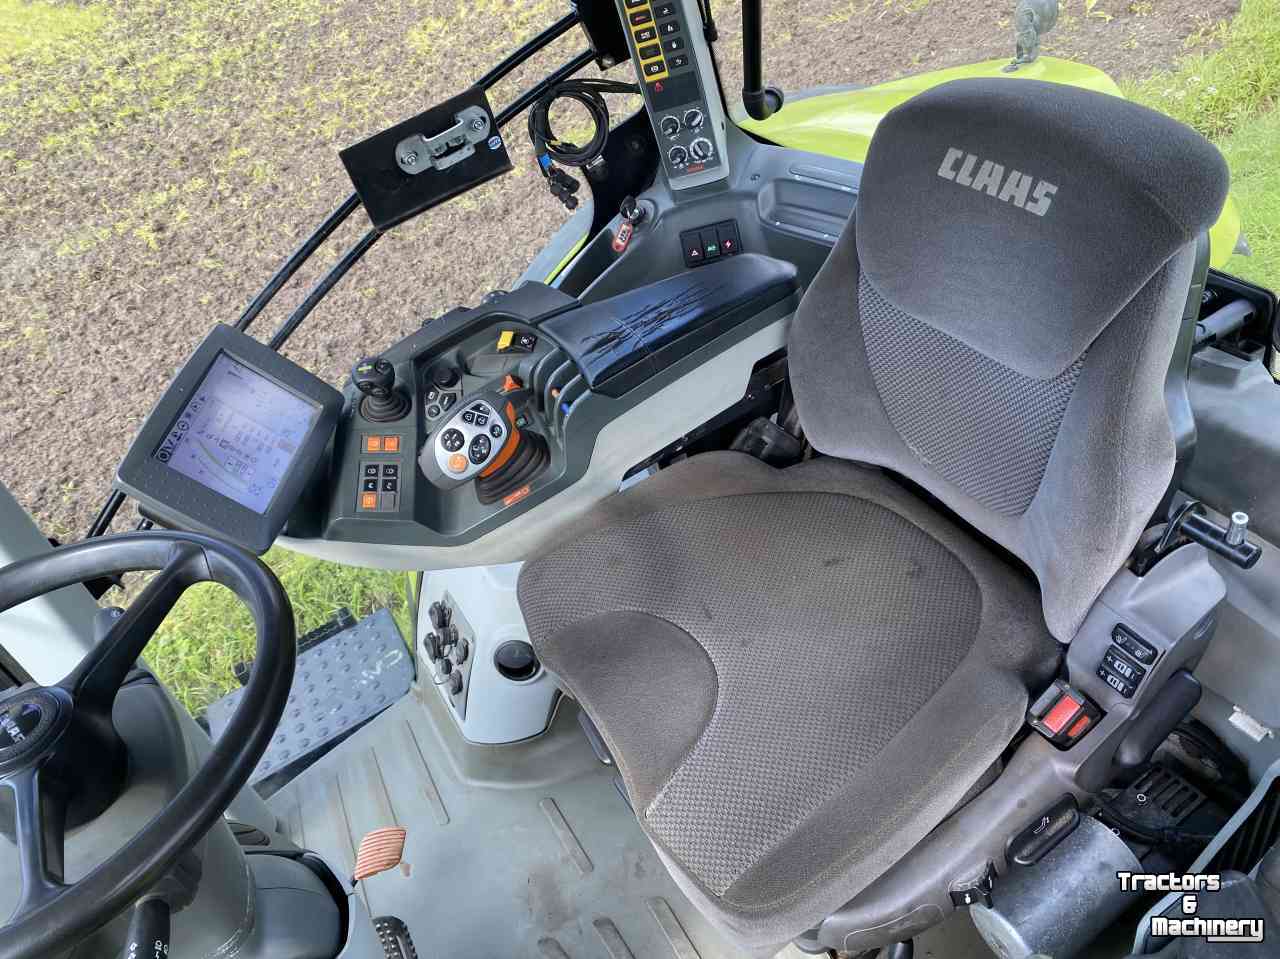 Tractors Claas Axion 830